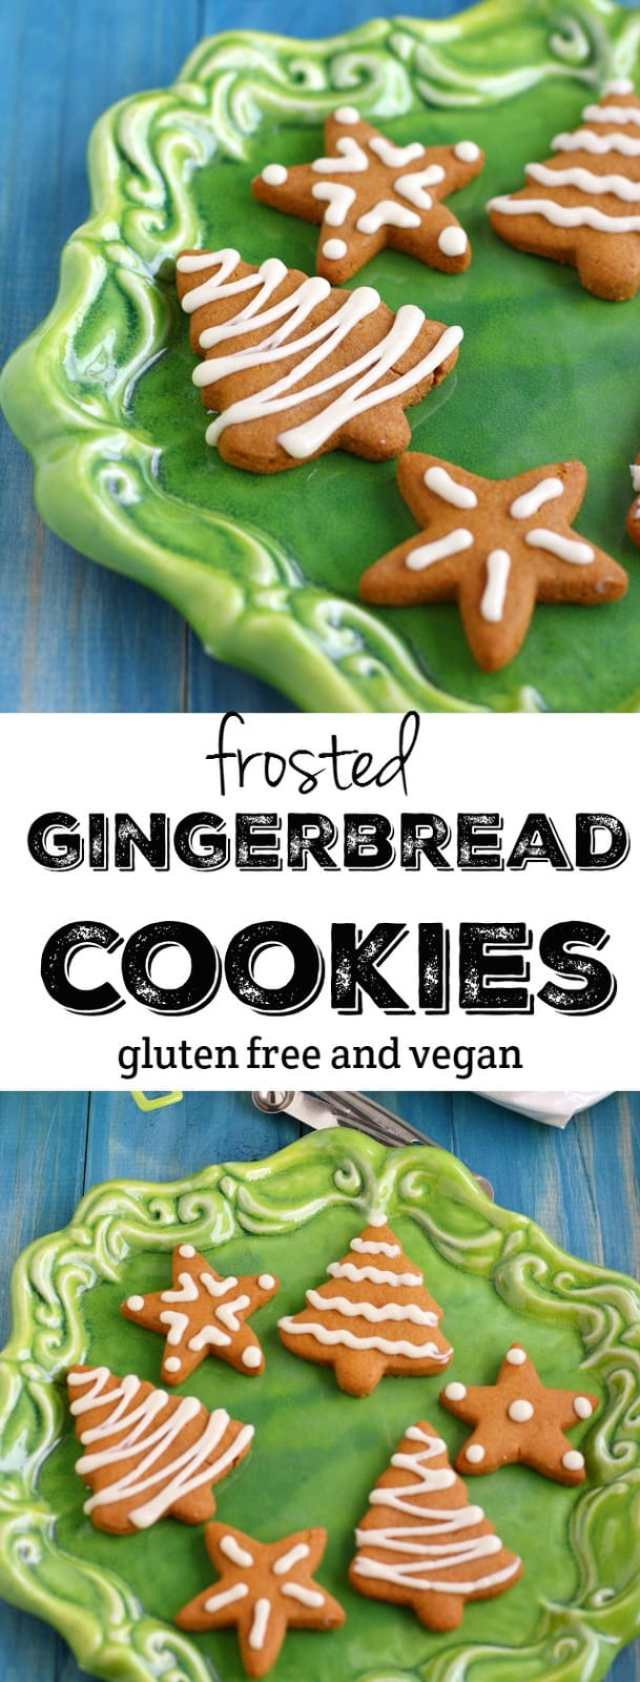 Vegan Gluten Free Gingerbread Cookies
 Gluten Free and Vegan Iced Gingerbread Cookies The